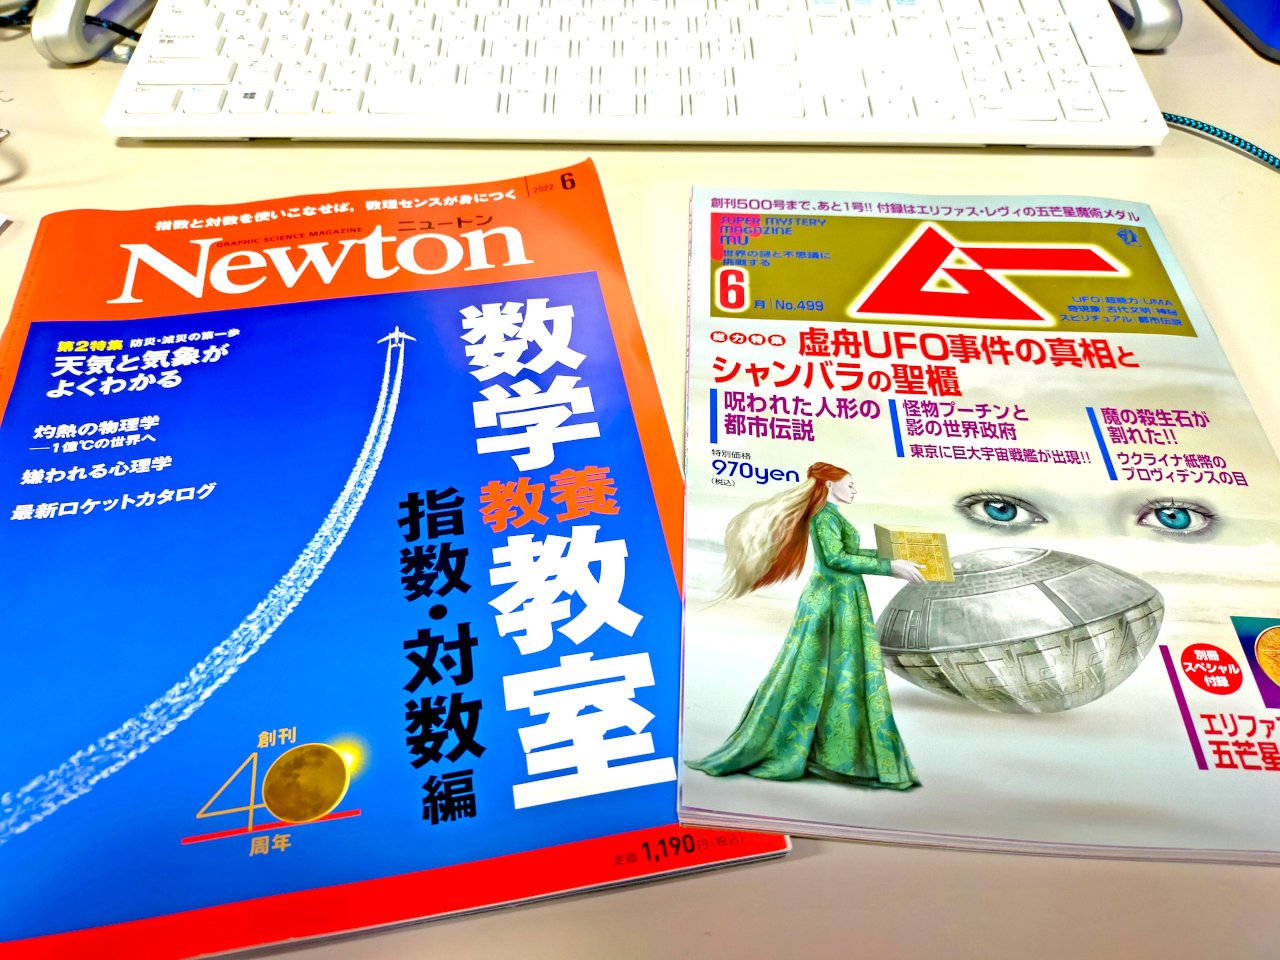 30年以上の愛読紙  「月刊ムー」と「Newton」